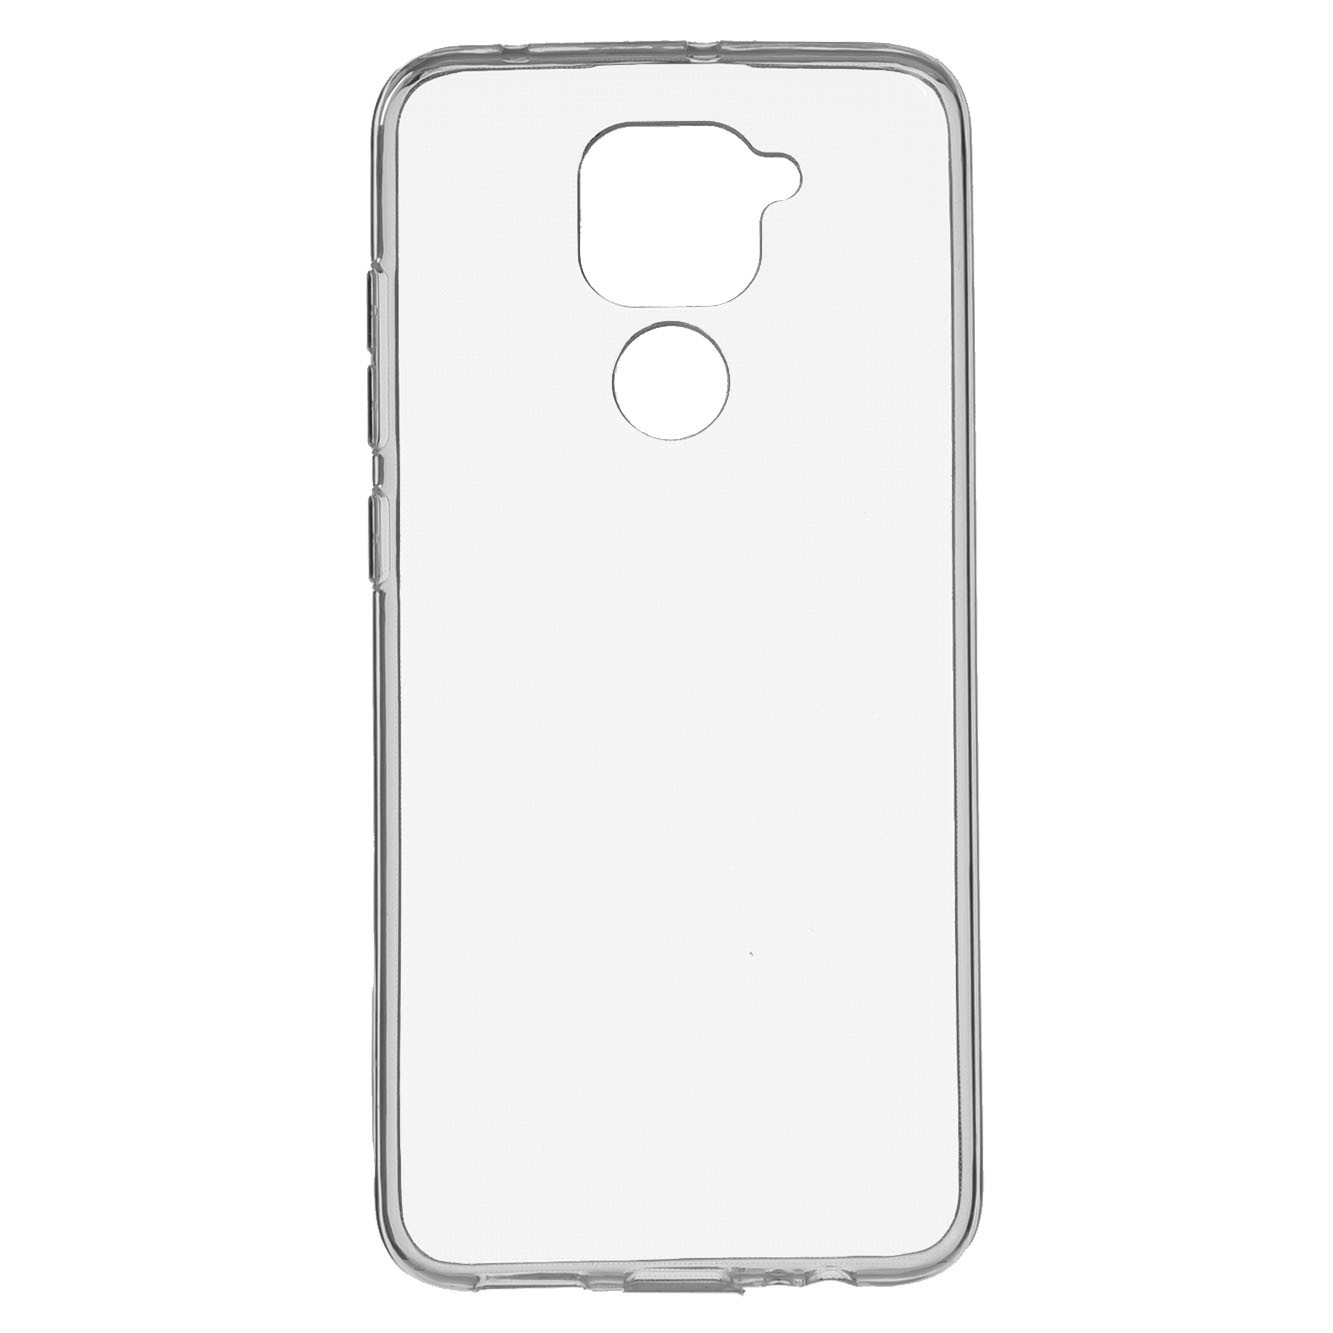 Carcasa Silicona Transparente para Xiaomi Redmi Note 9